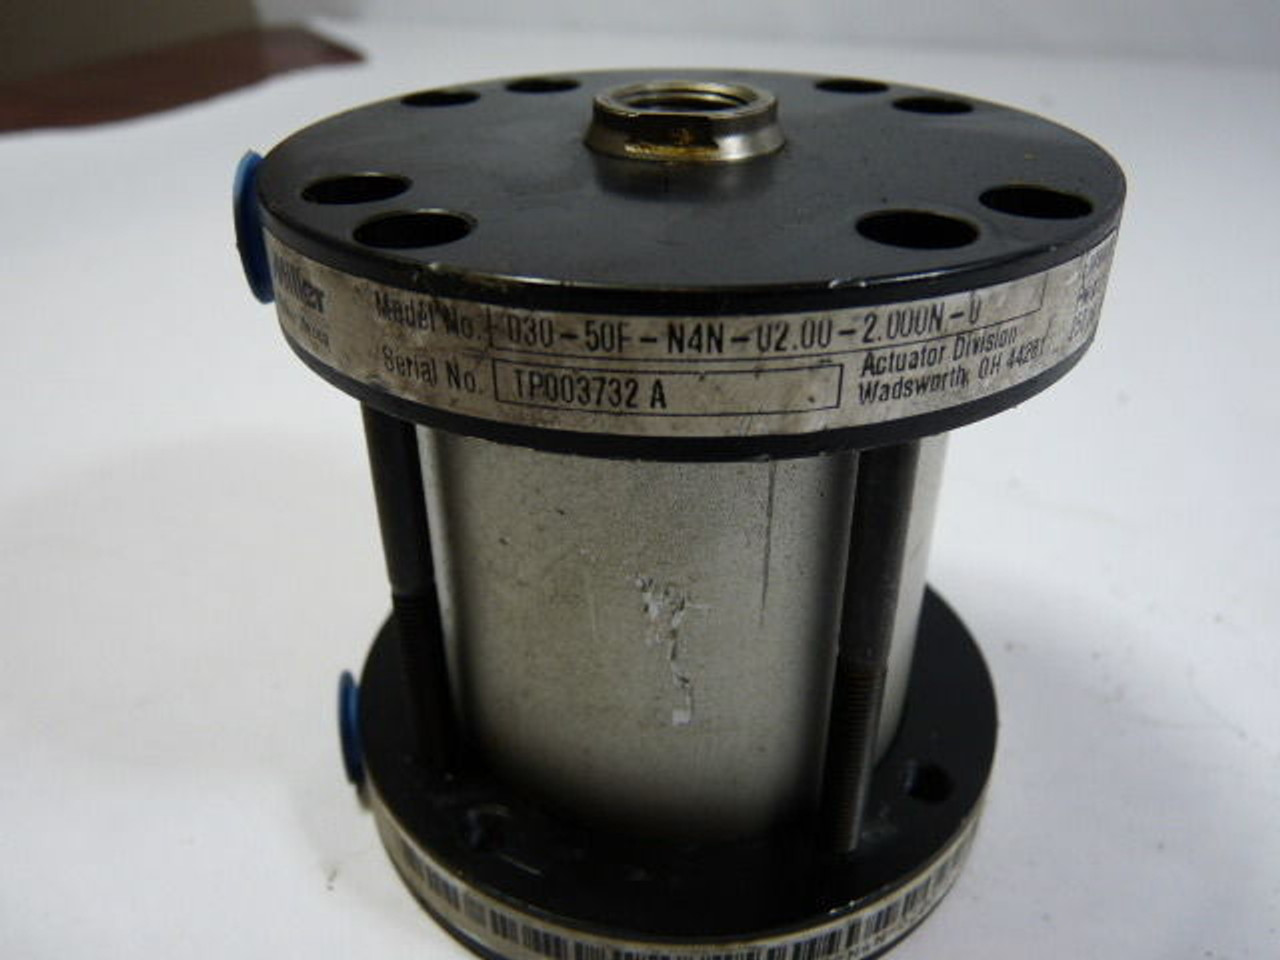 Miller 030-50F-N4N Hydraulic Cylinder ! NEW !